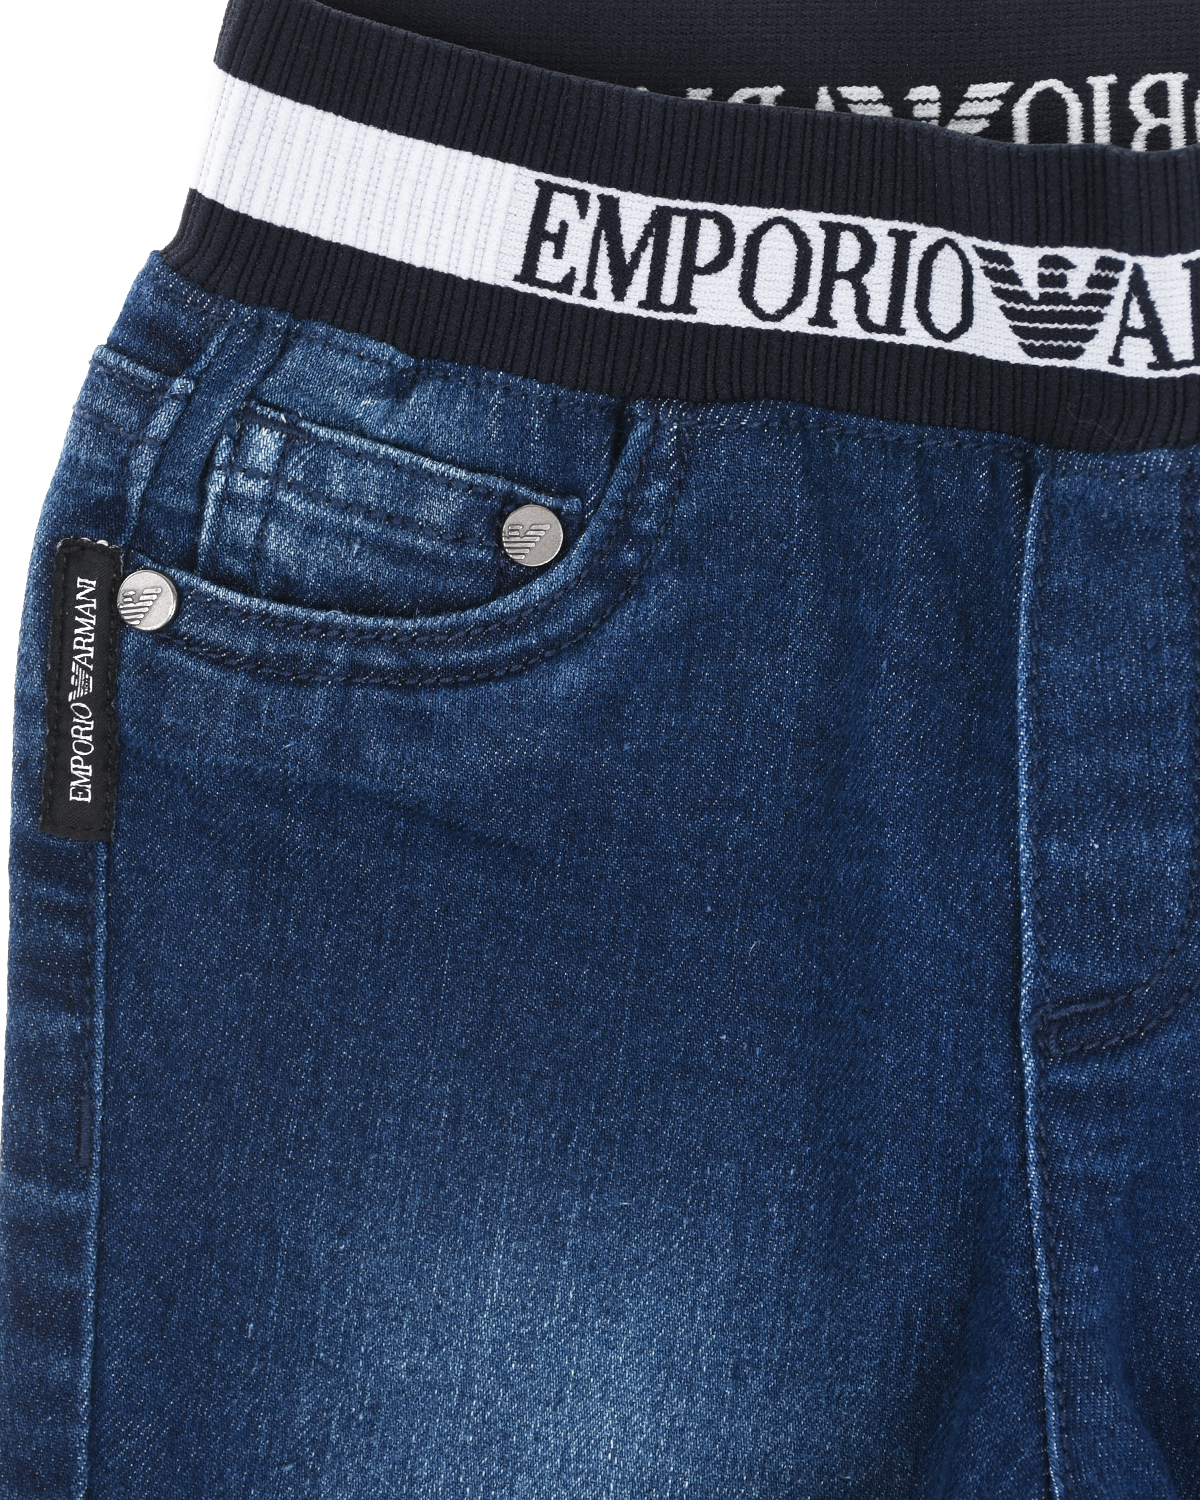 Синие джинсы с поясом-резинкой Emporio Armani детские - фото 3